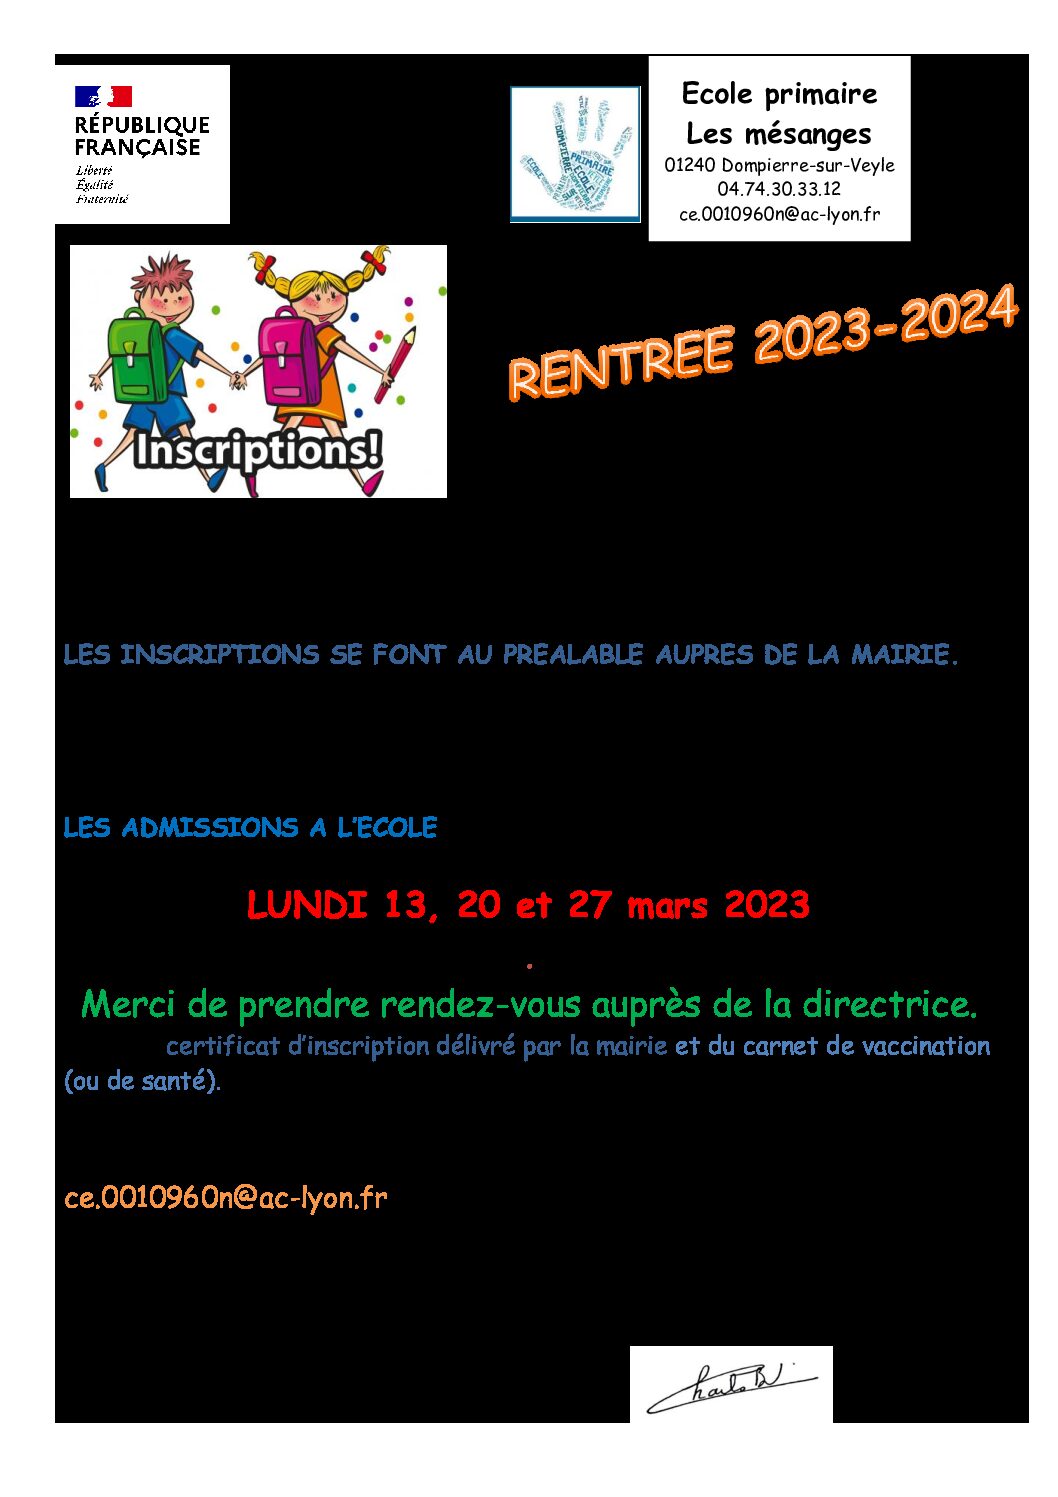 Ecole primaire Les mésanges : rentrée 09/2023